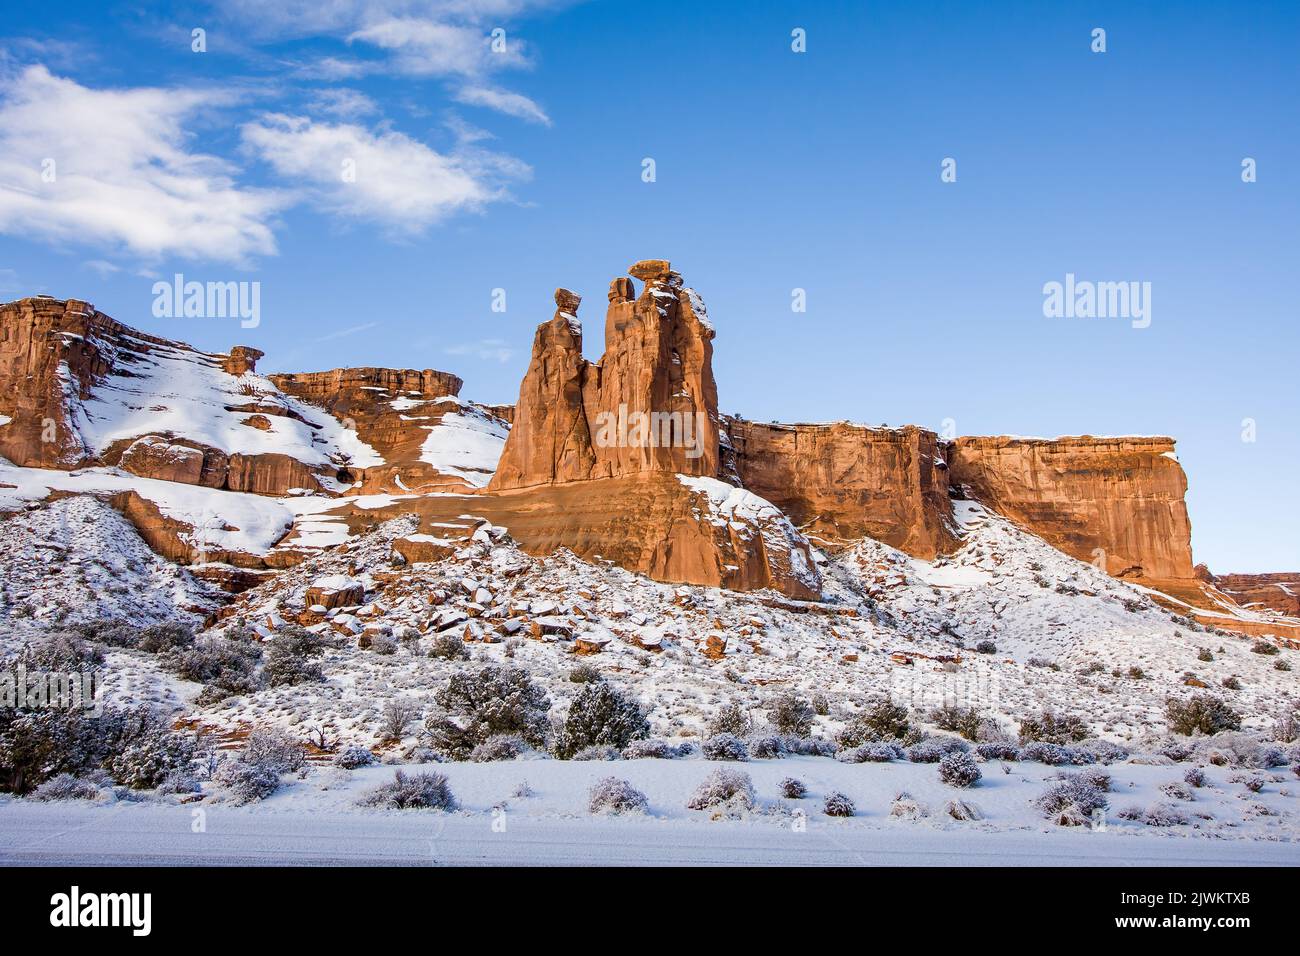 Les hoodoos connus sous le nom de trois gossips dans les tours de palais de justice avec de la neige en hiver. Parc national Arches, Moab, Utah. Banque D'Images